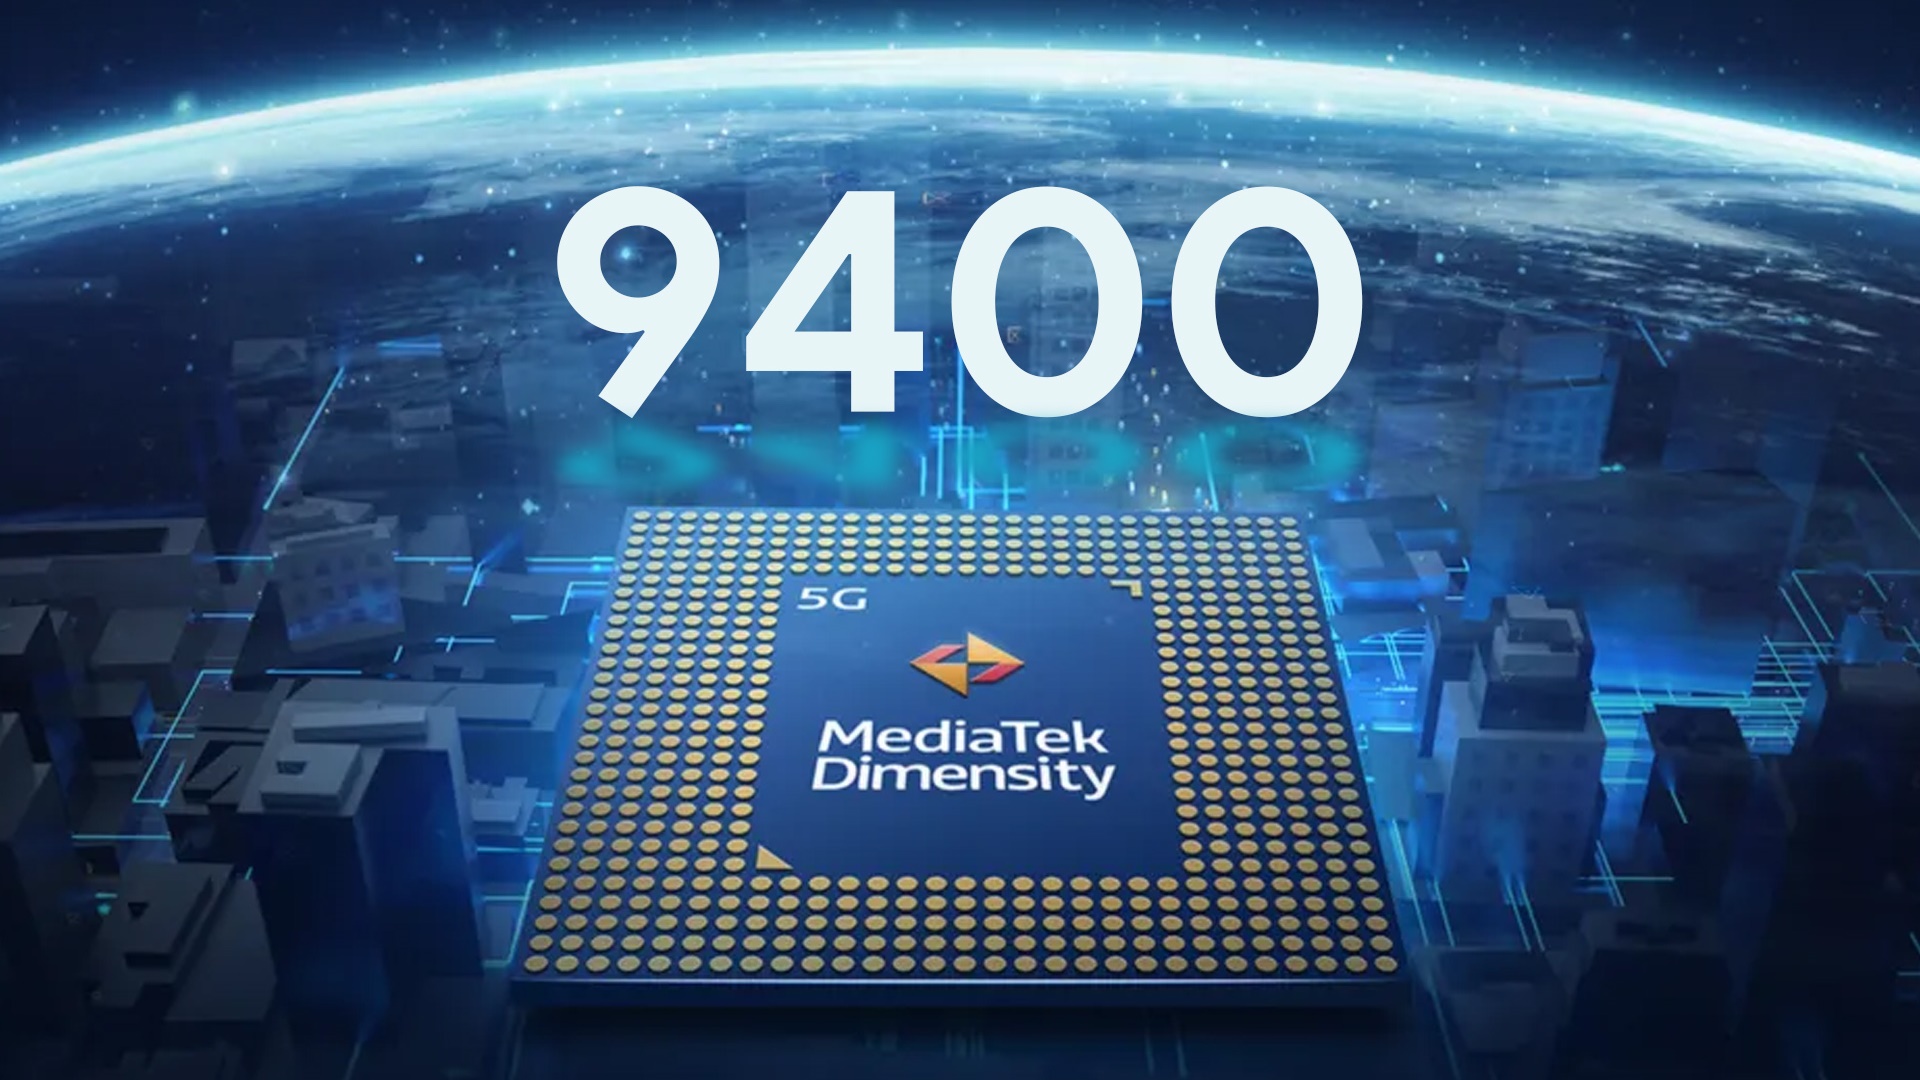 MediaTek's Dimensity 9400 SoC zou meer dan 30 miljard transistors kunnen bevatten